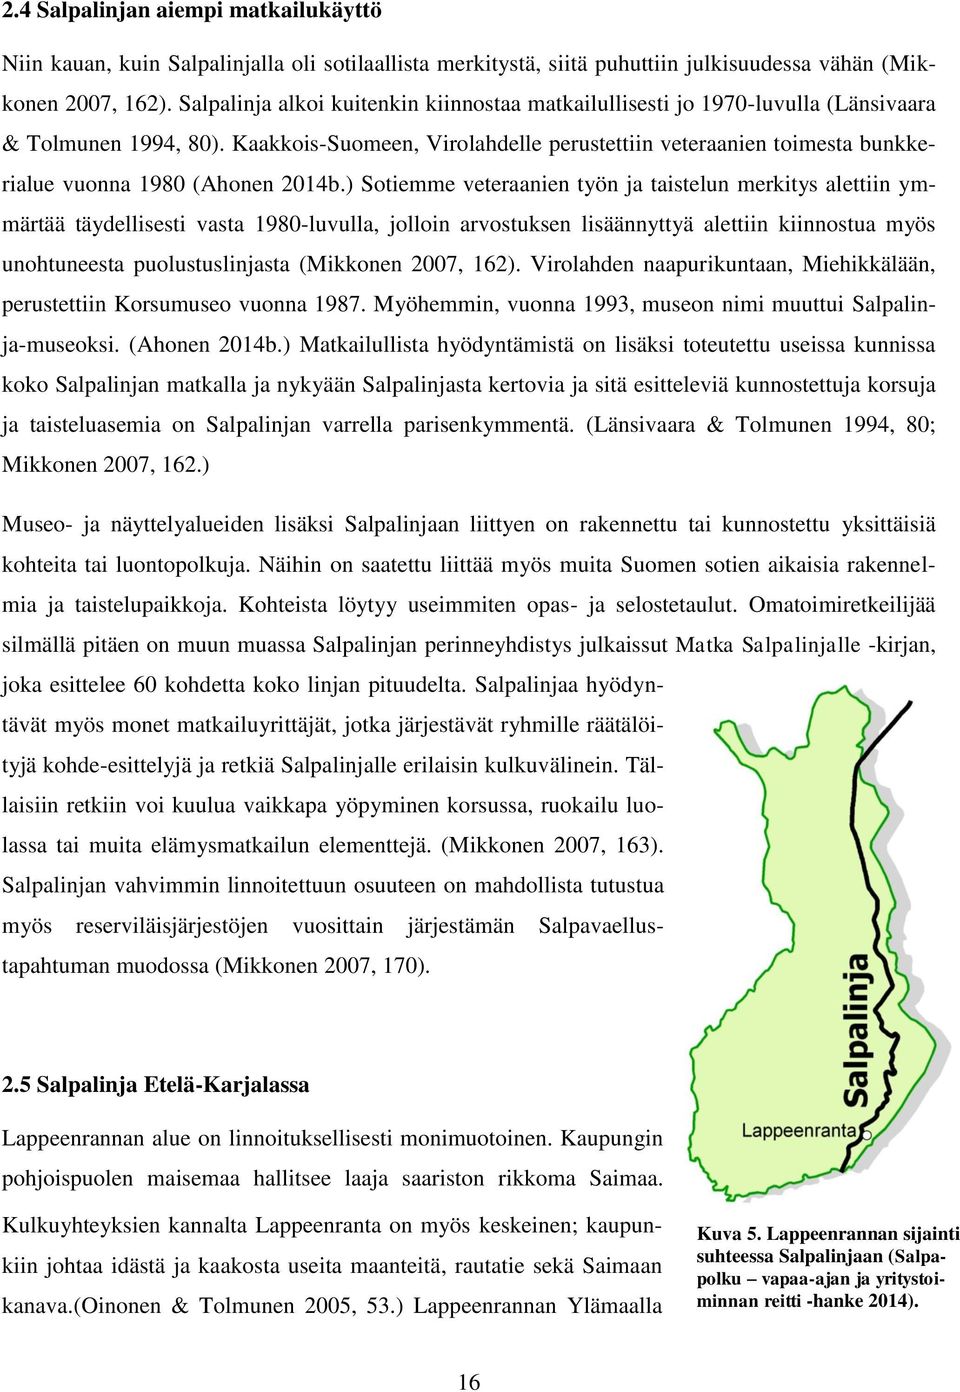 Kaakkois-Suomeen, Virolahdelle perustettiin veteraanien toimesta bunkkerialue vuonna 1980 (Ahonen 2014b.